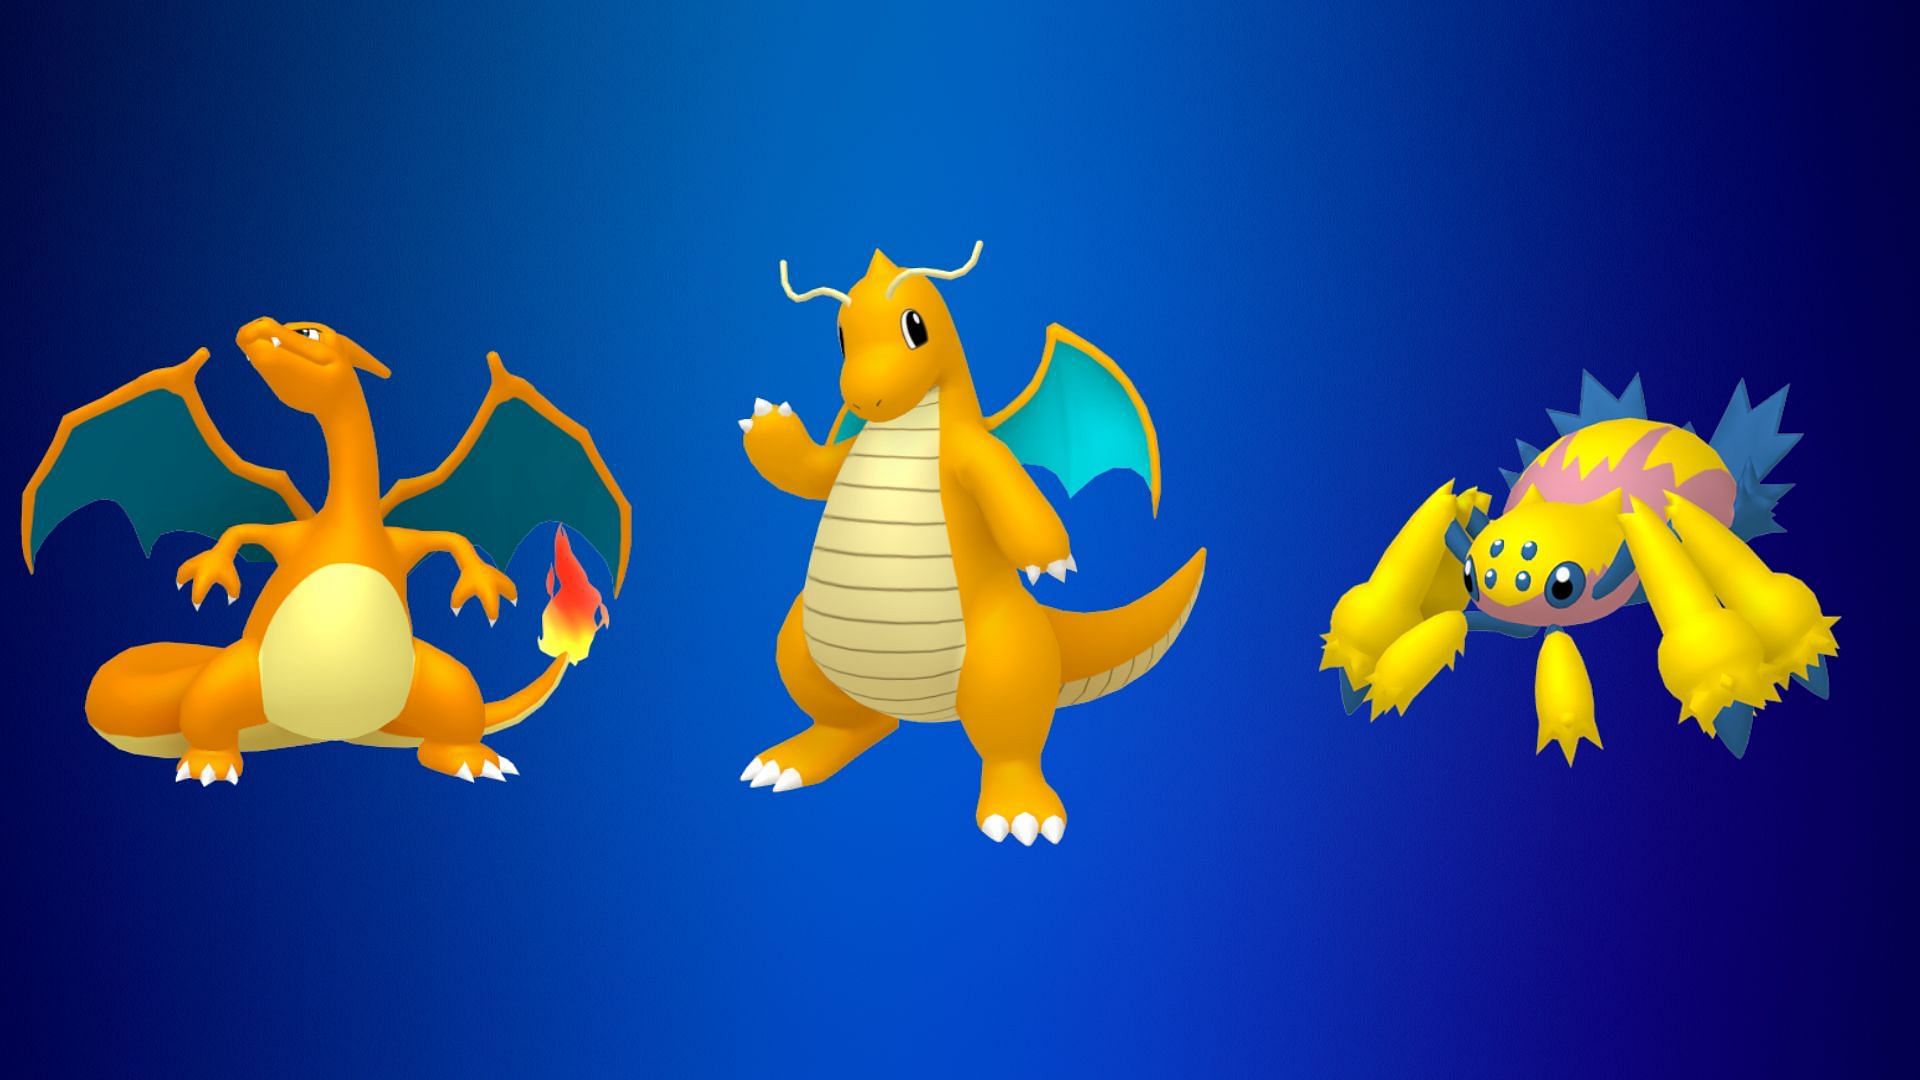 Charizard Ombra, Dragonite Ombra e Galvantula Ombra (Immagine tramite The Pokemon Company)